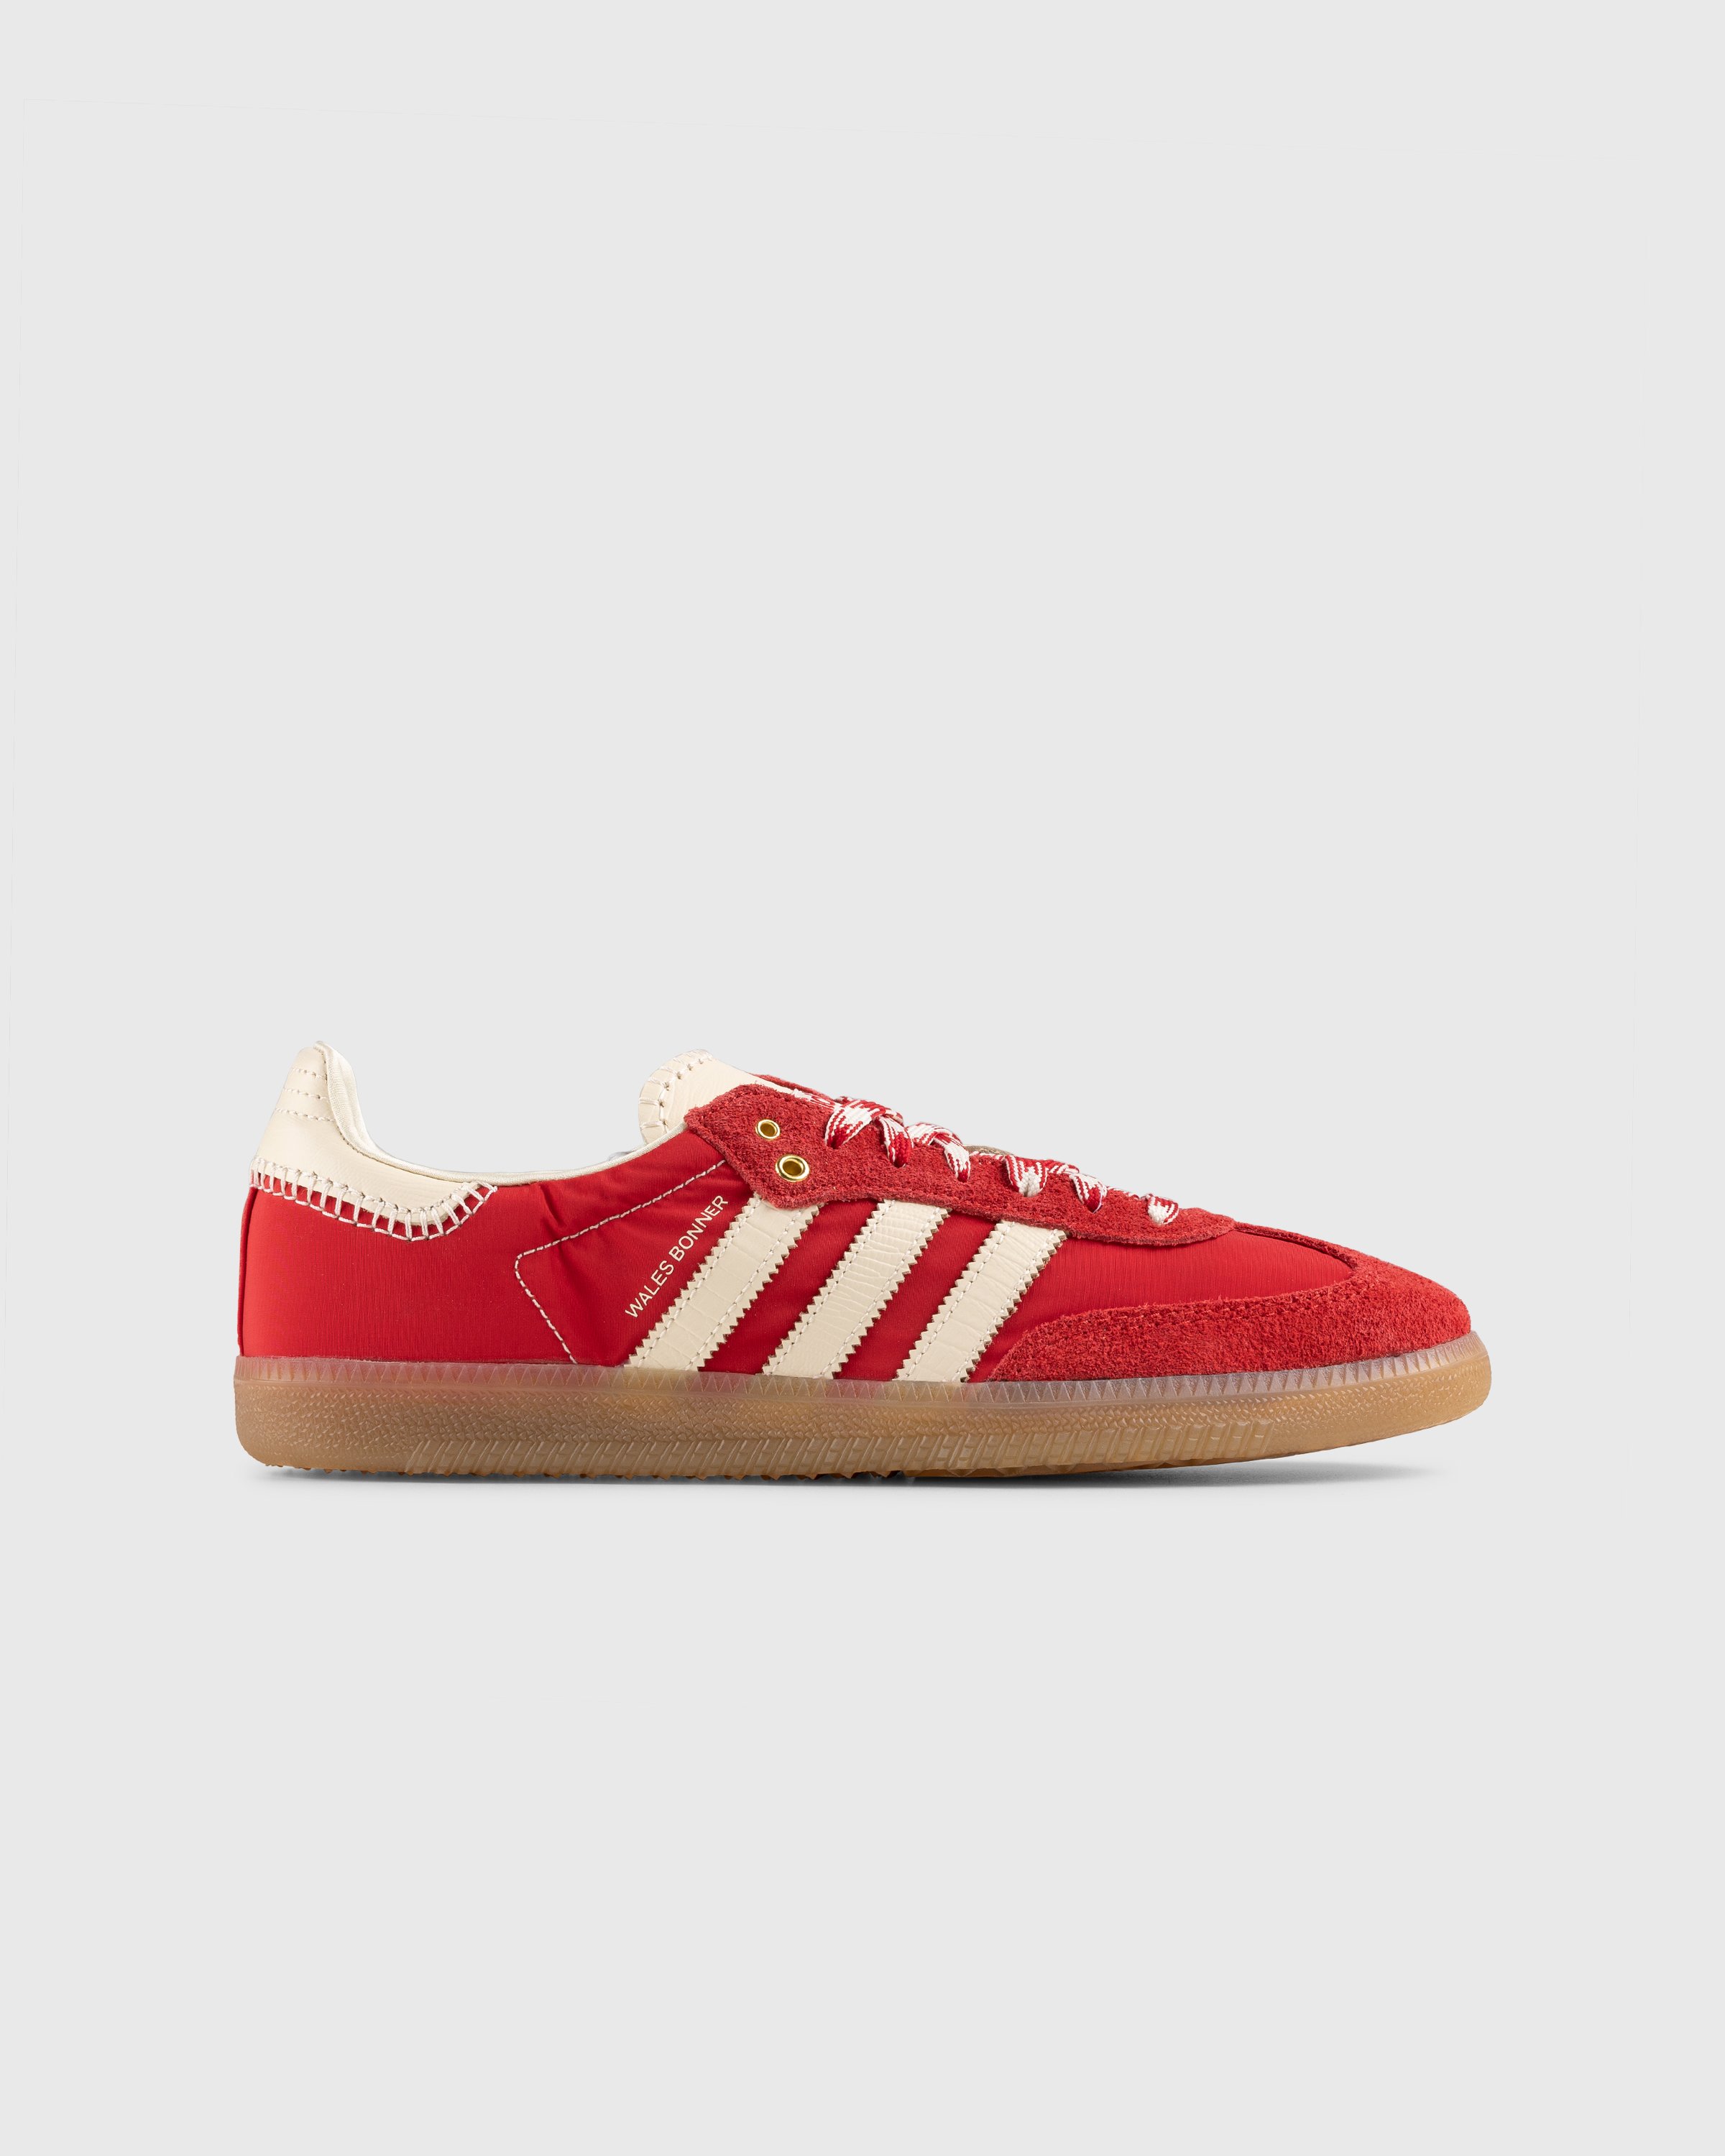 Adidas x Wales Bonner - WB Samba Scarlet/Ecru Tint/Scarlet - Footwear - Red - Image 1